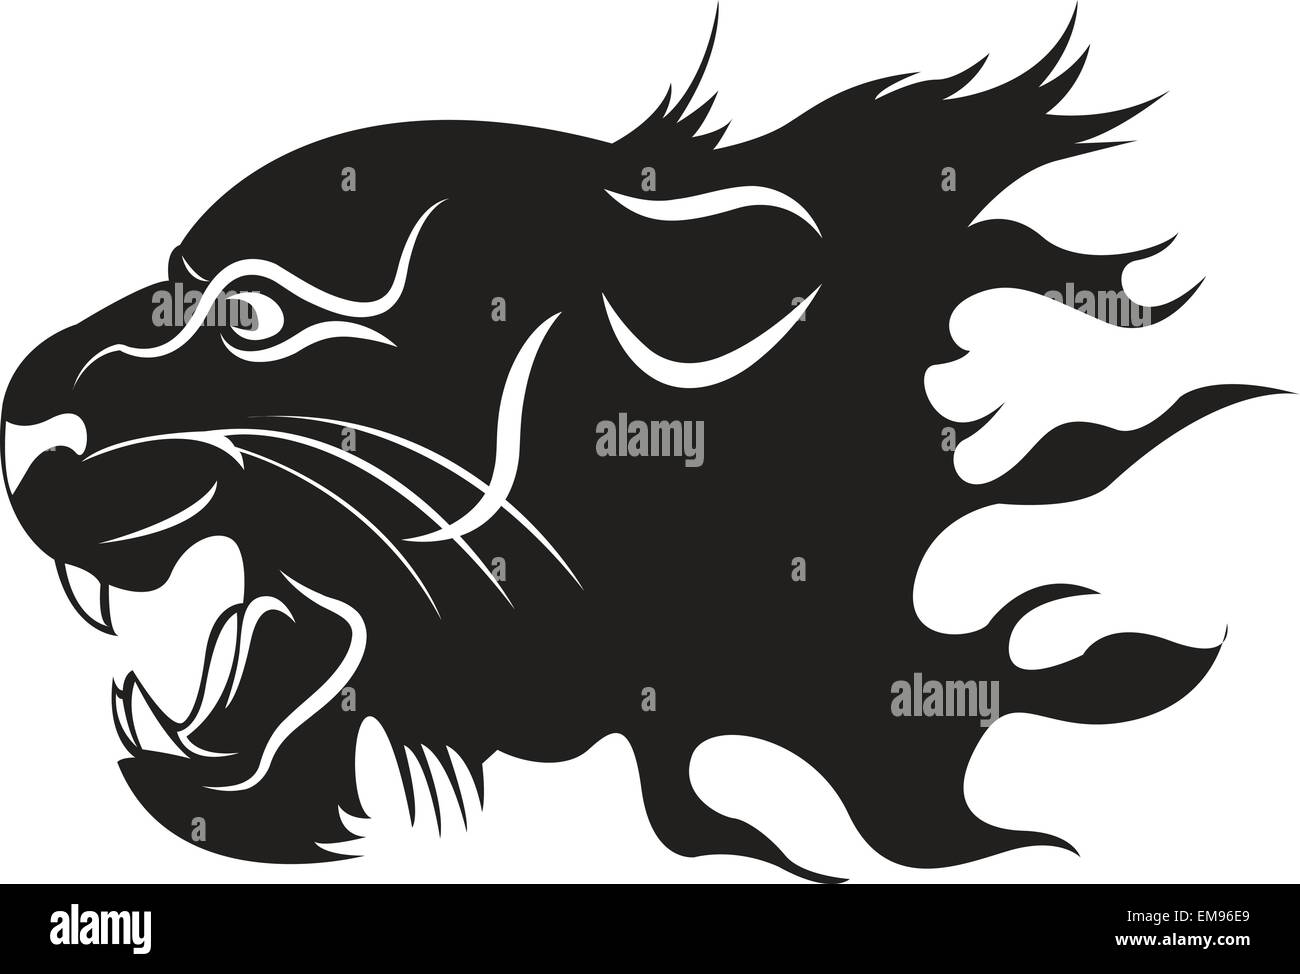 Abstract testa isolata della pantera nera su sfondo bianco Illustrazione Vettoriale